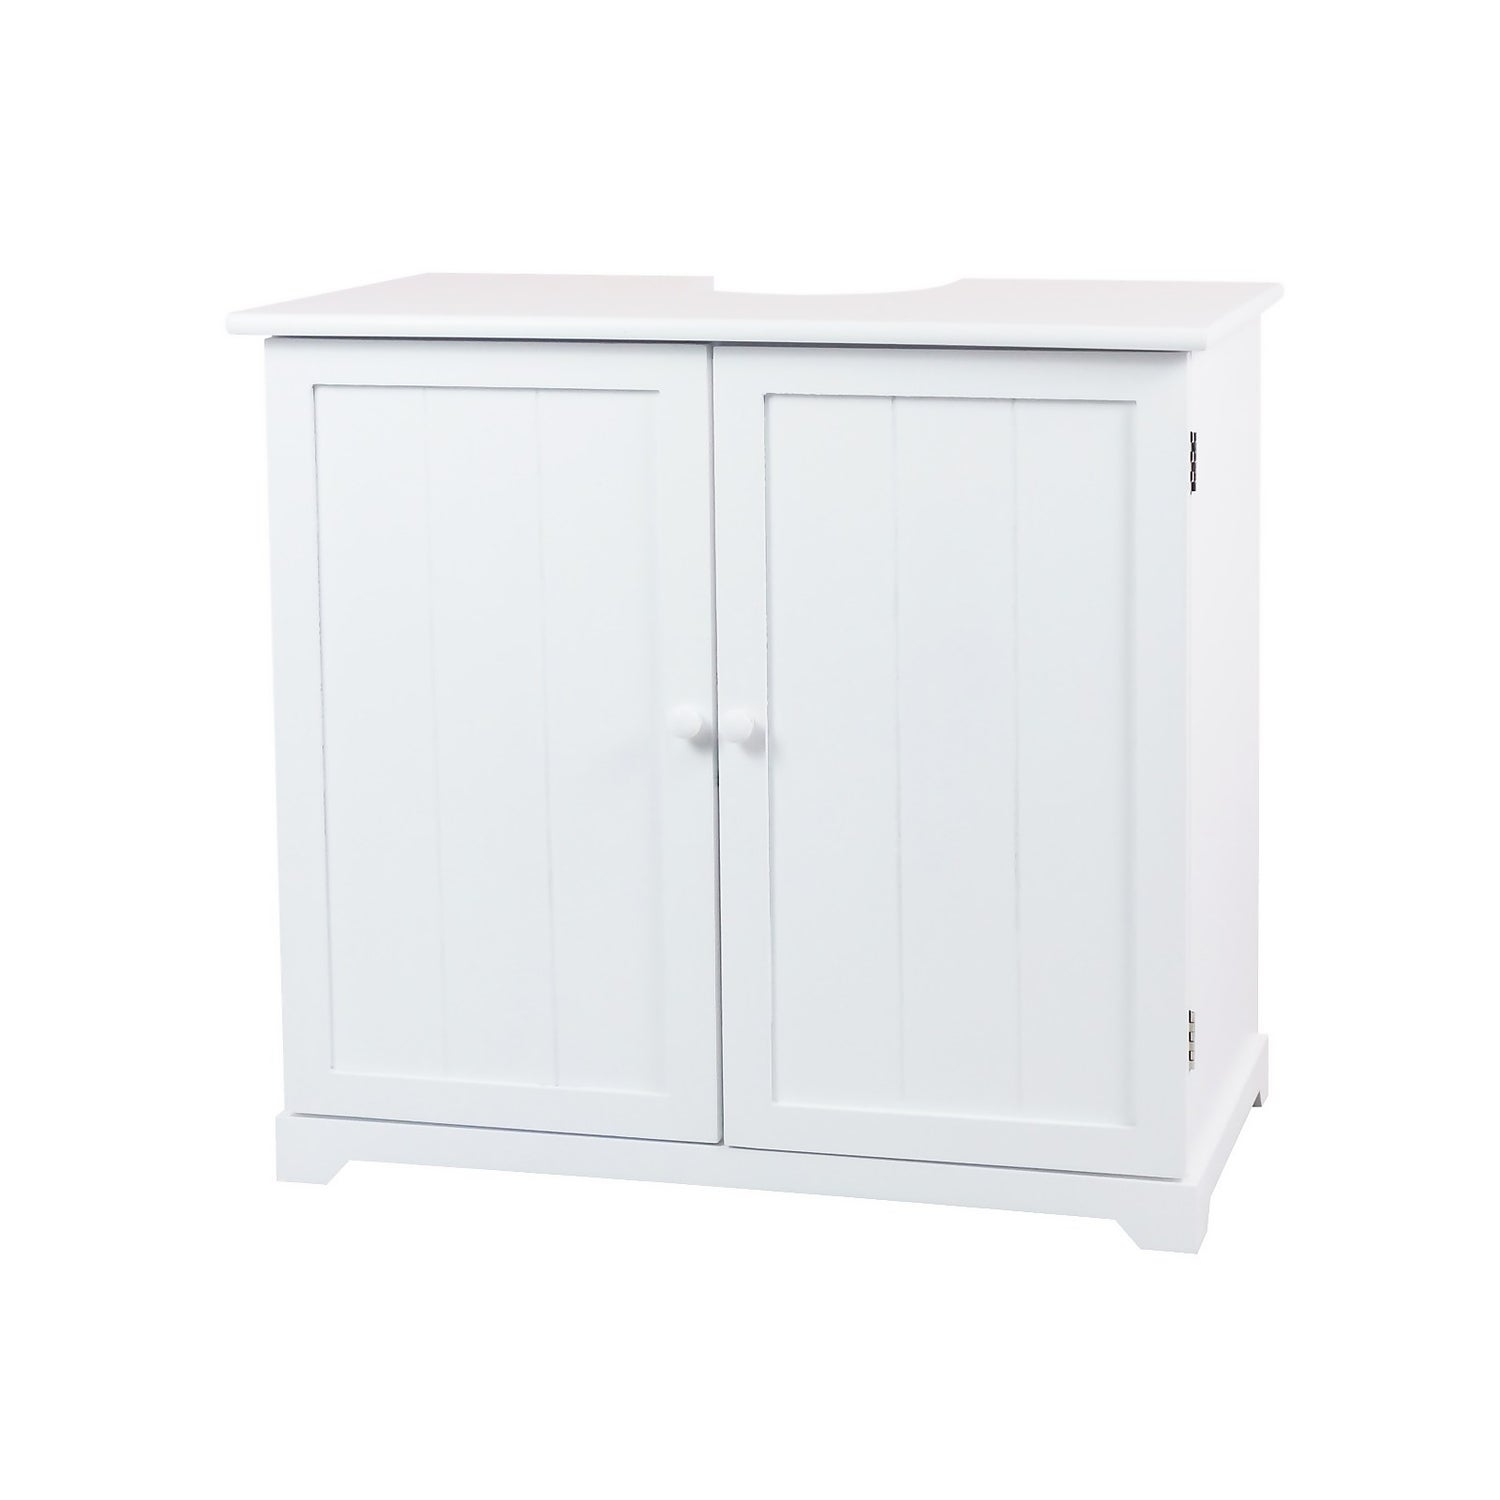 Priano 2 Door Under Sink Cabinet Bathroom Cupboard Storage Unit, Grey